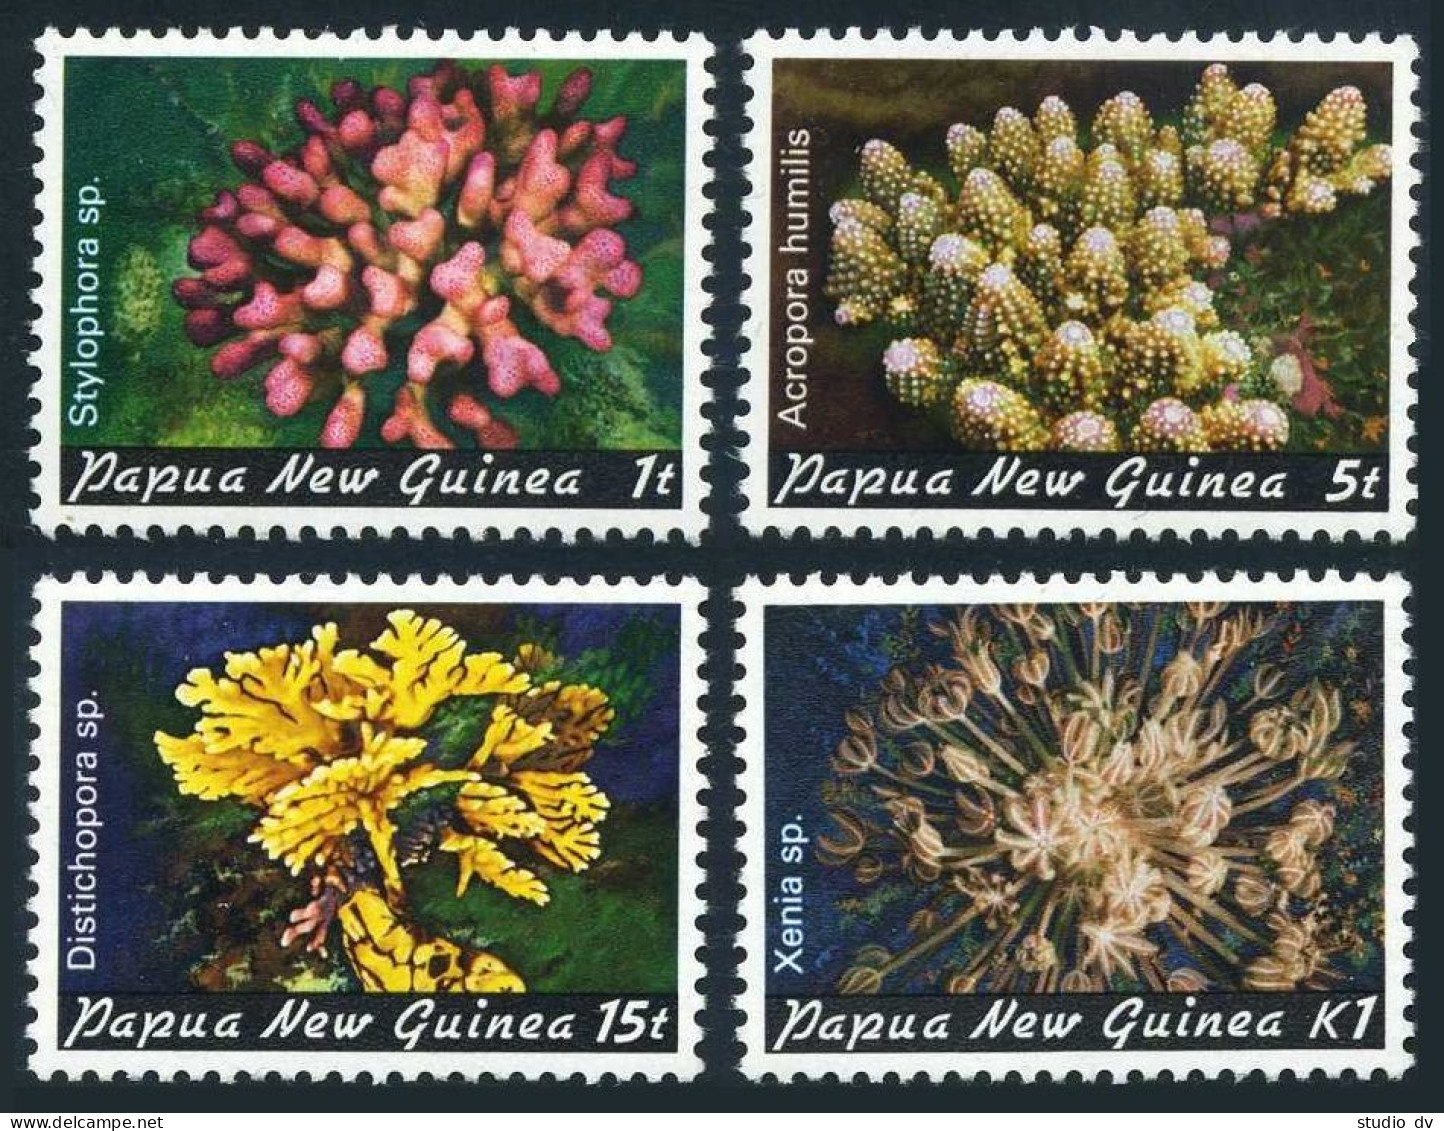 Papua New Guinea 566-569, MNH. Corals, 1982. - Guinea (1958-...)